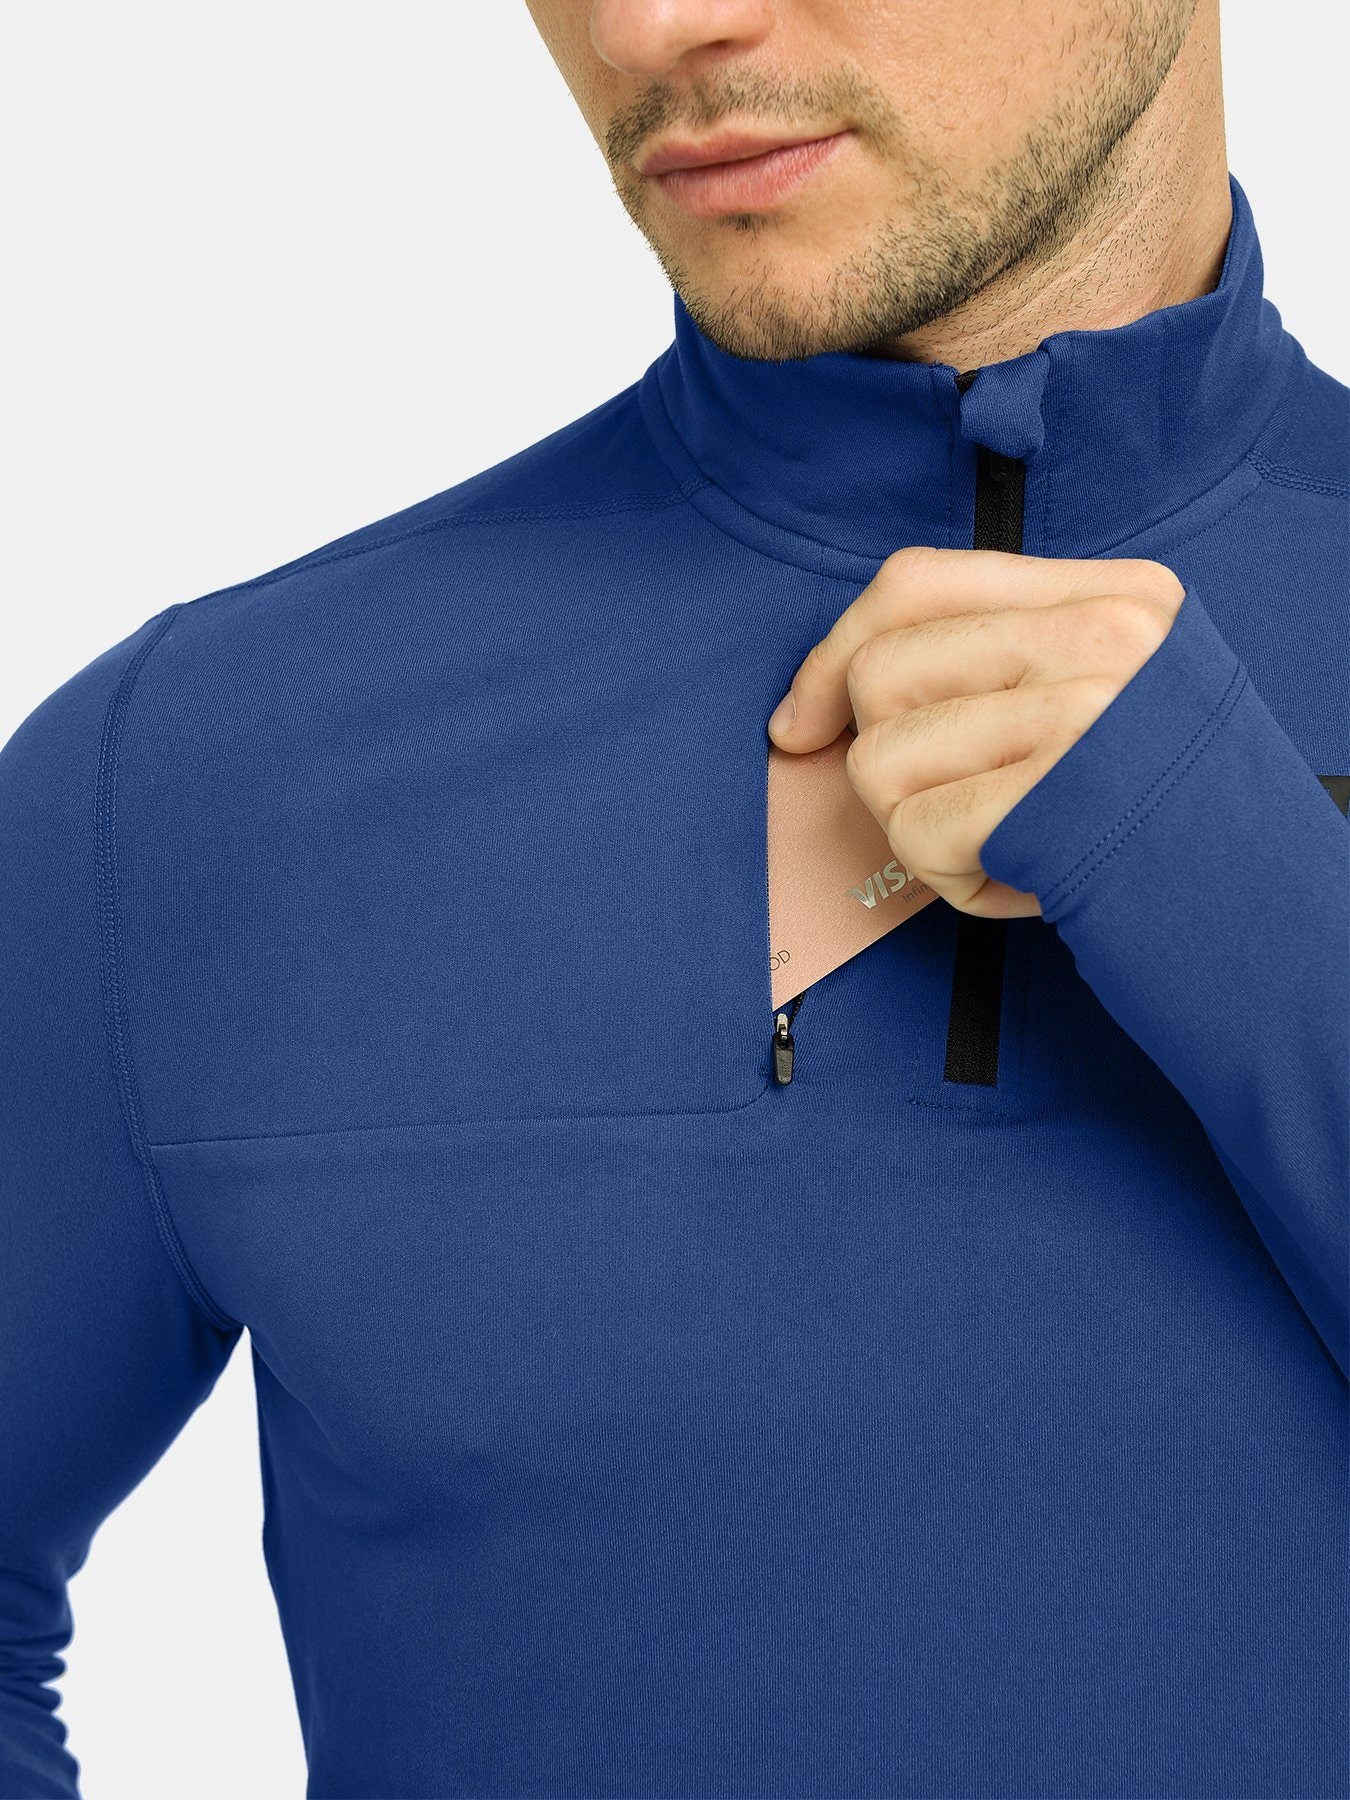 Fusion Half Zip Running Top For Men With Thumbholes & Chest Zip Pocket